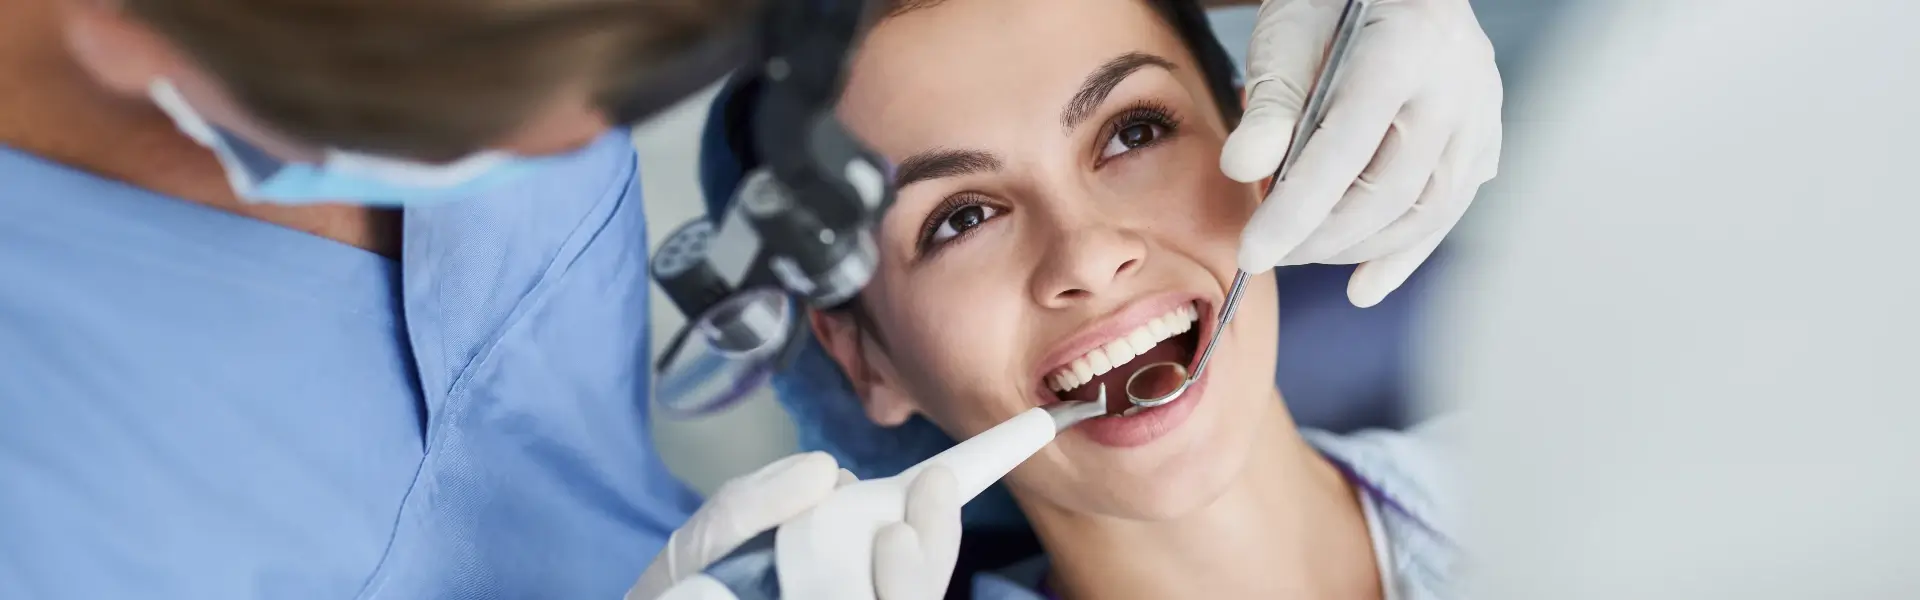 טיפול שיניים בהרדמה מלאה תהליך וטיפים לטיפול